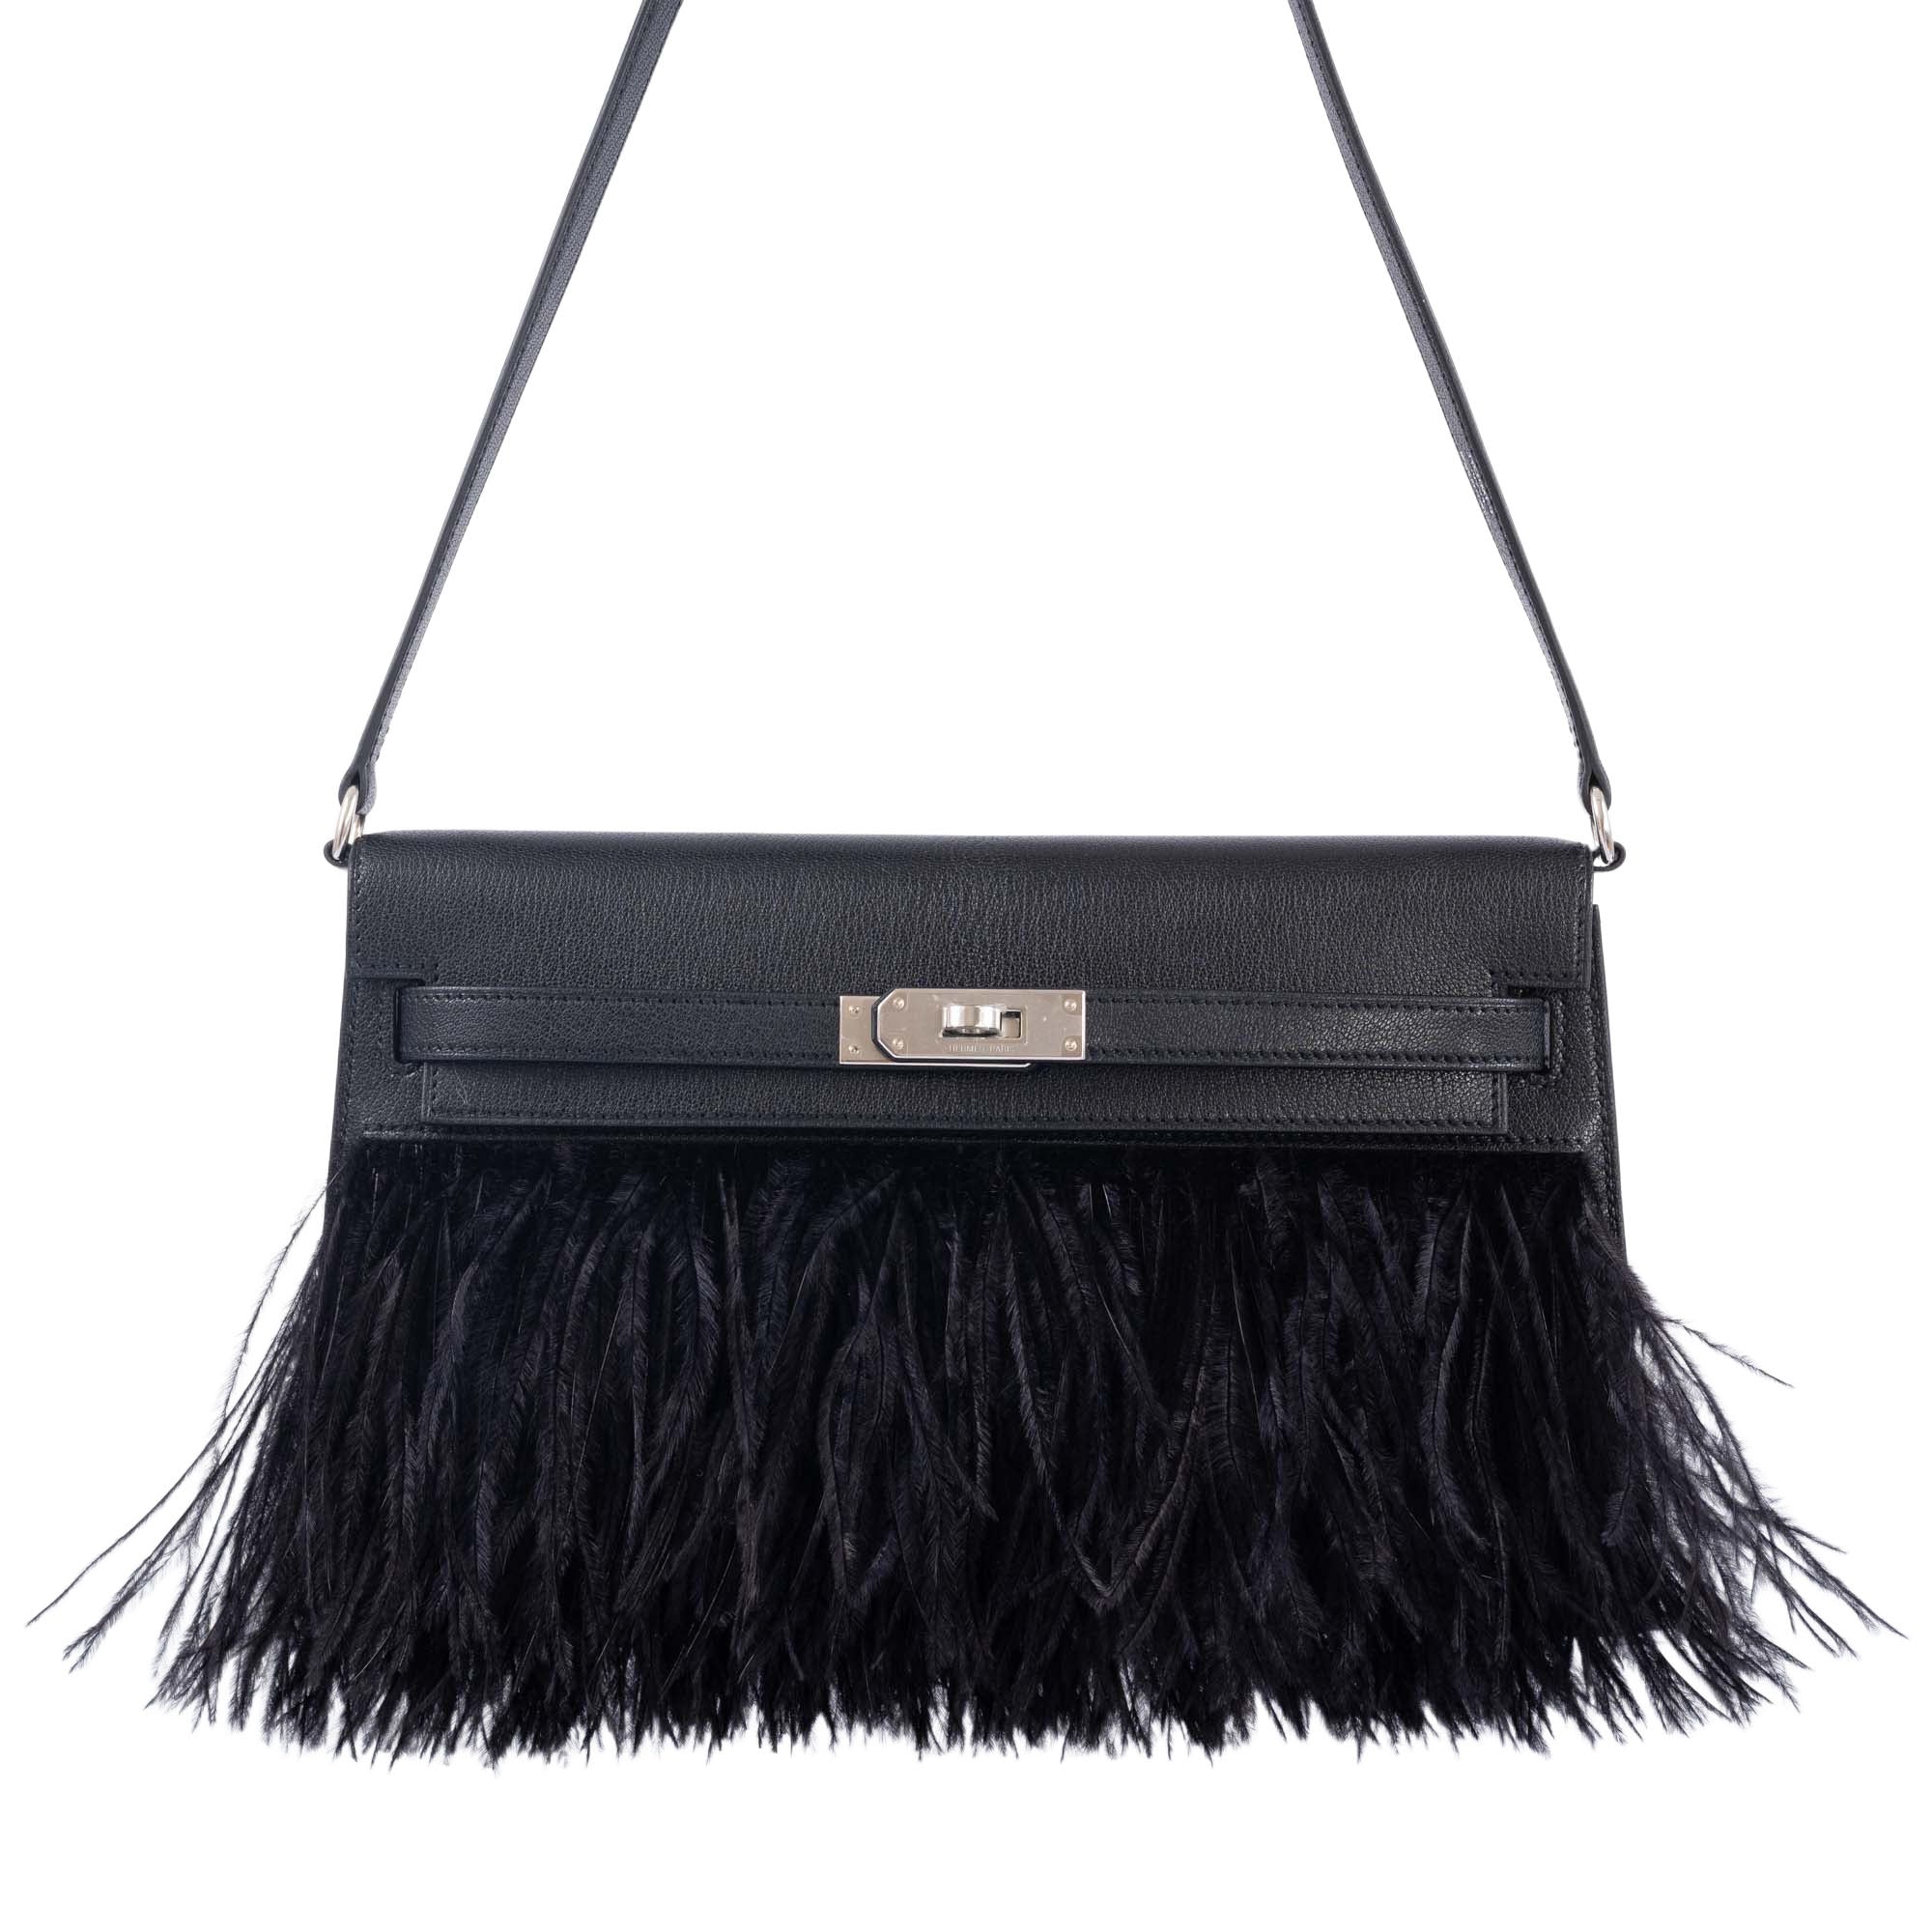 Hermès Kelly | 25, 30, 35 & 40cm Bag Sizes